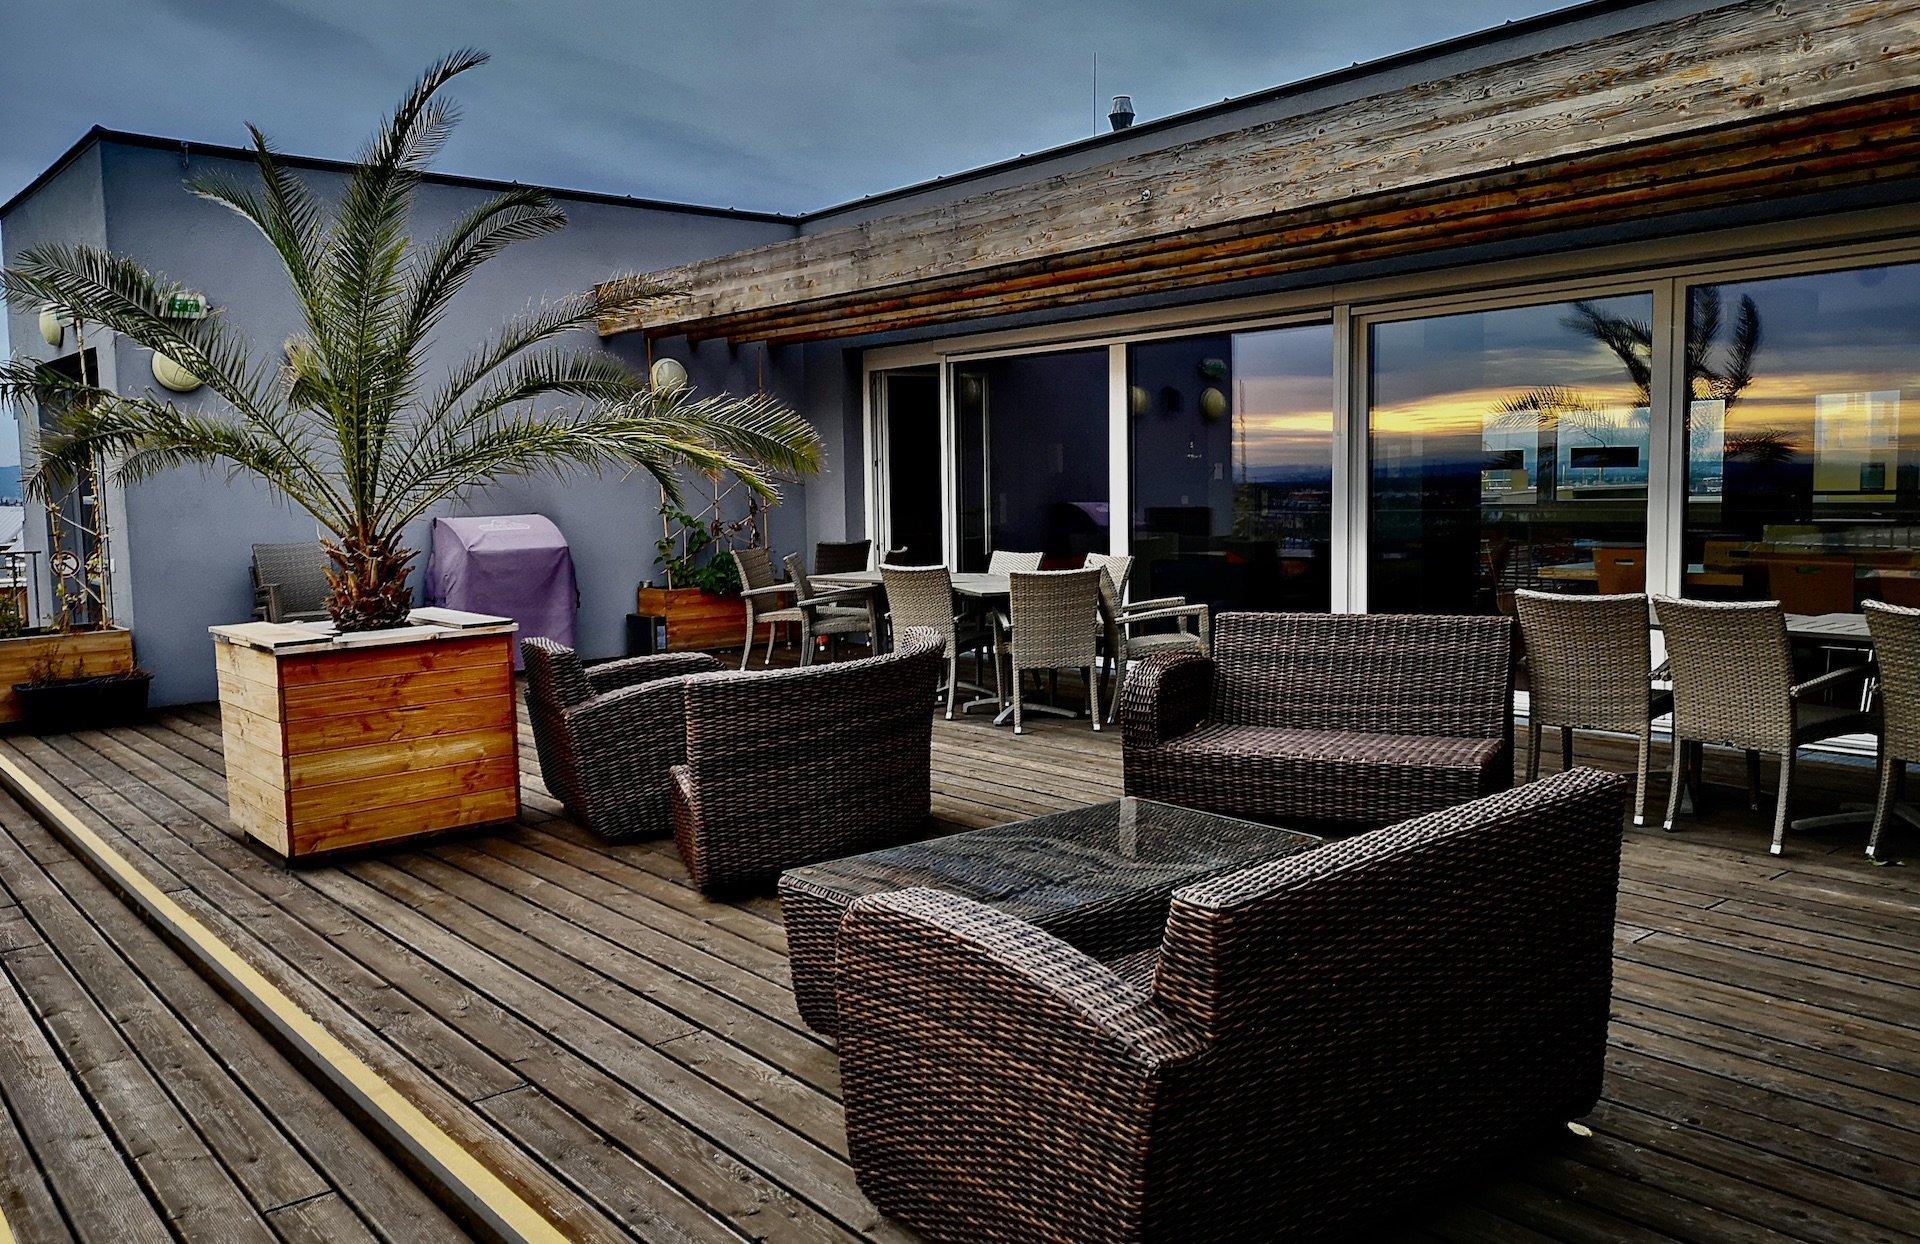 Braune Planken, Loungemöbel und Palmen – schöne Dachterrassen zum Relaxen sind bei den Baugruppen beliebt